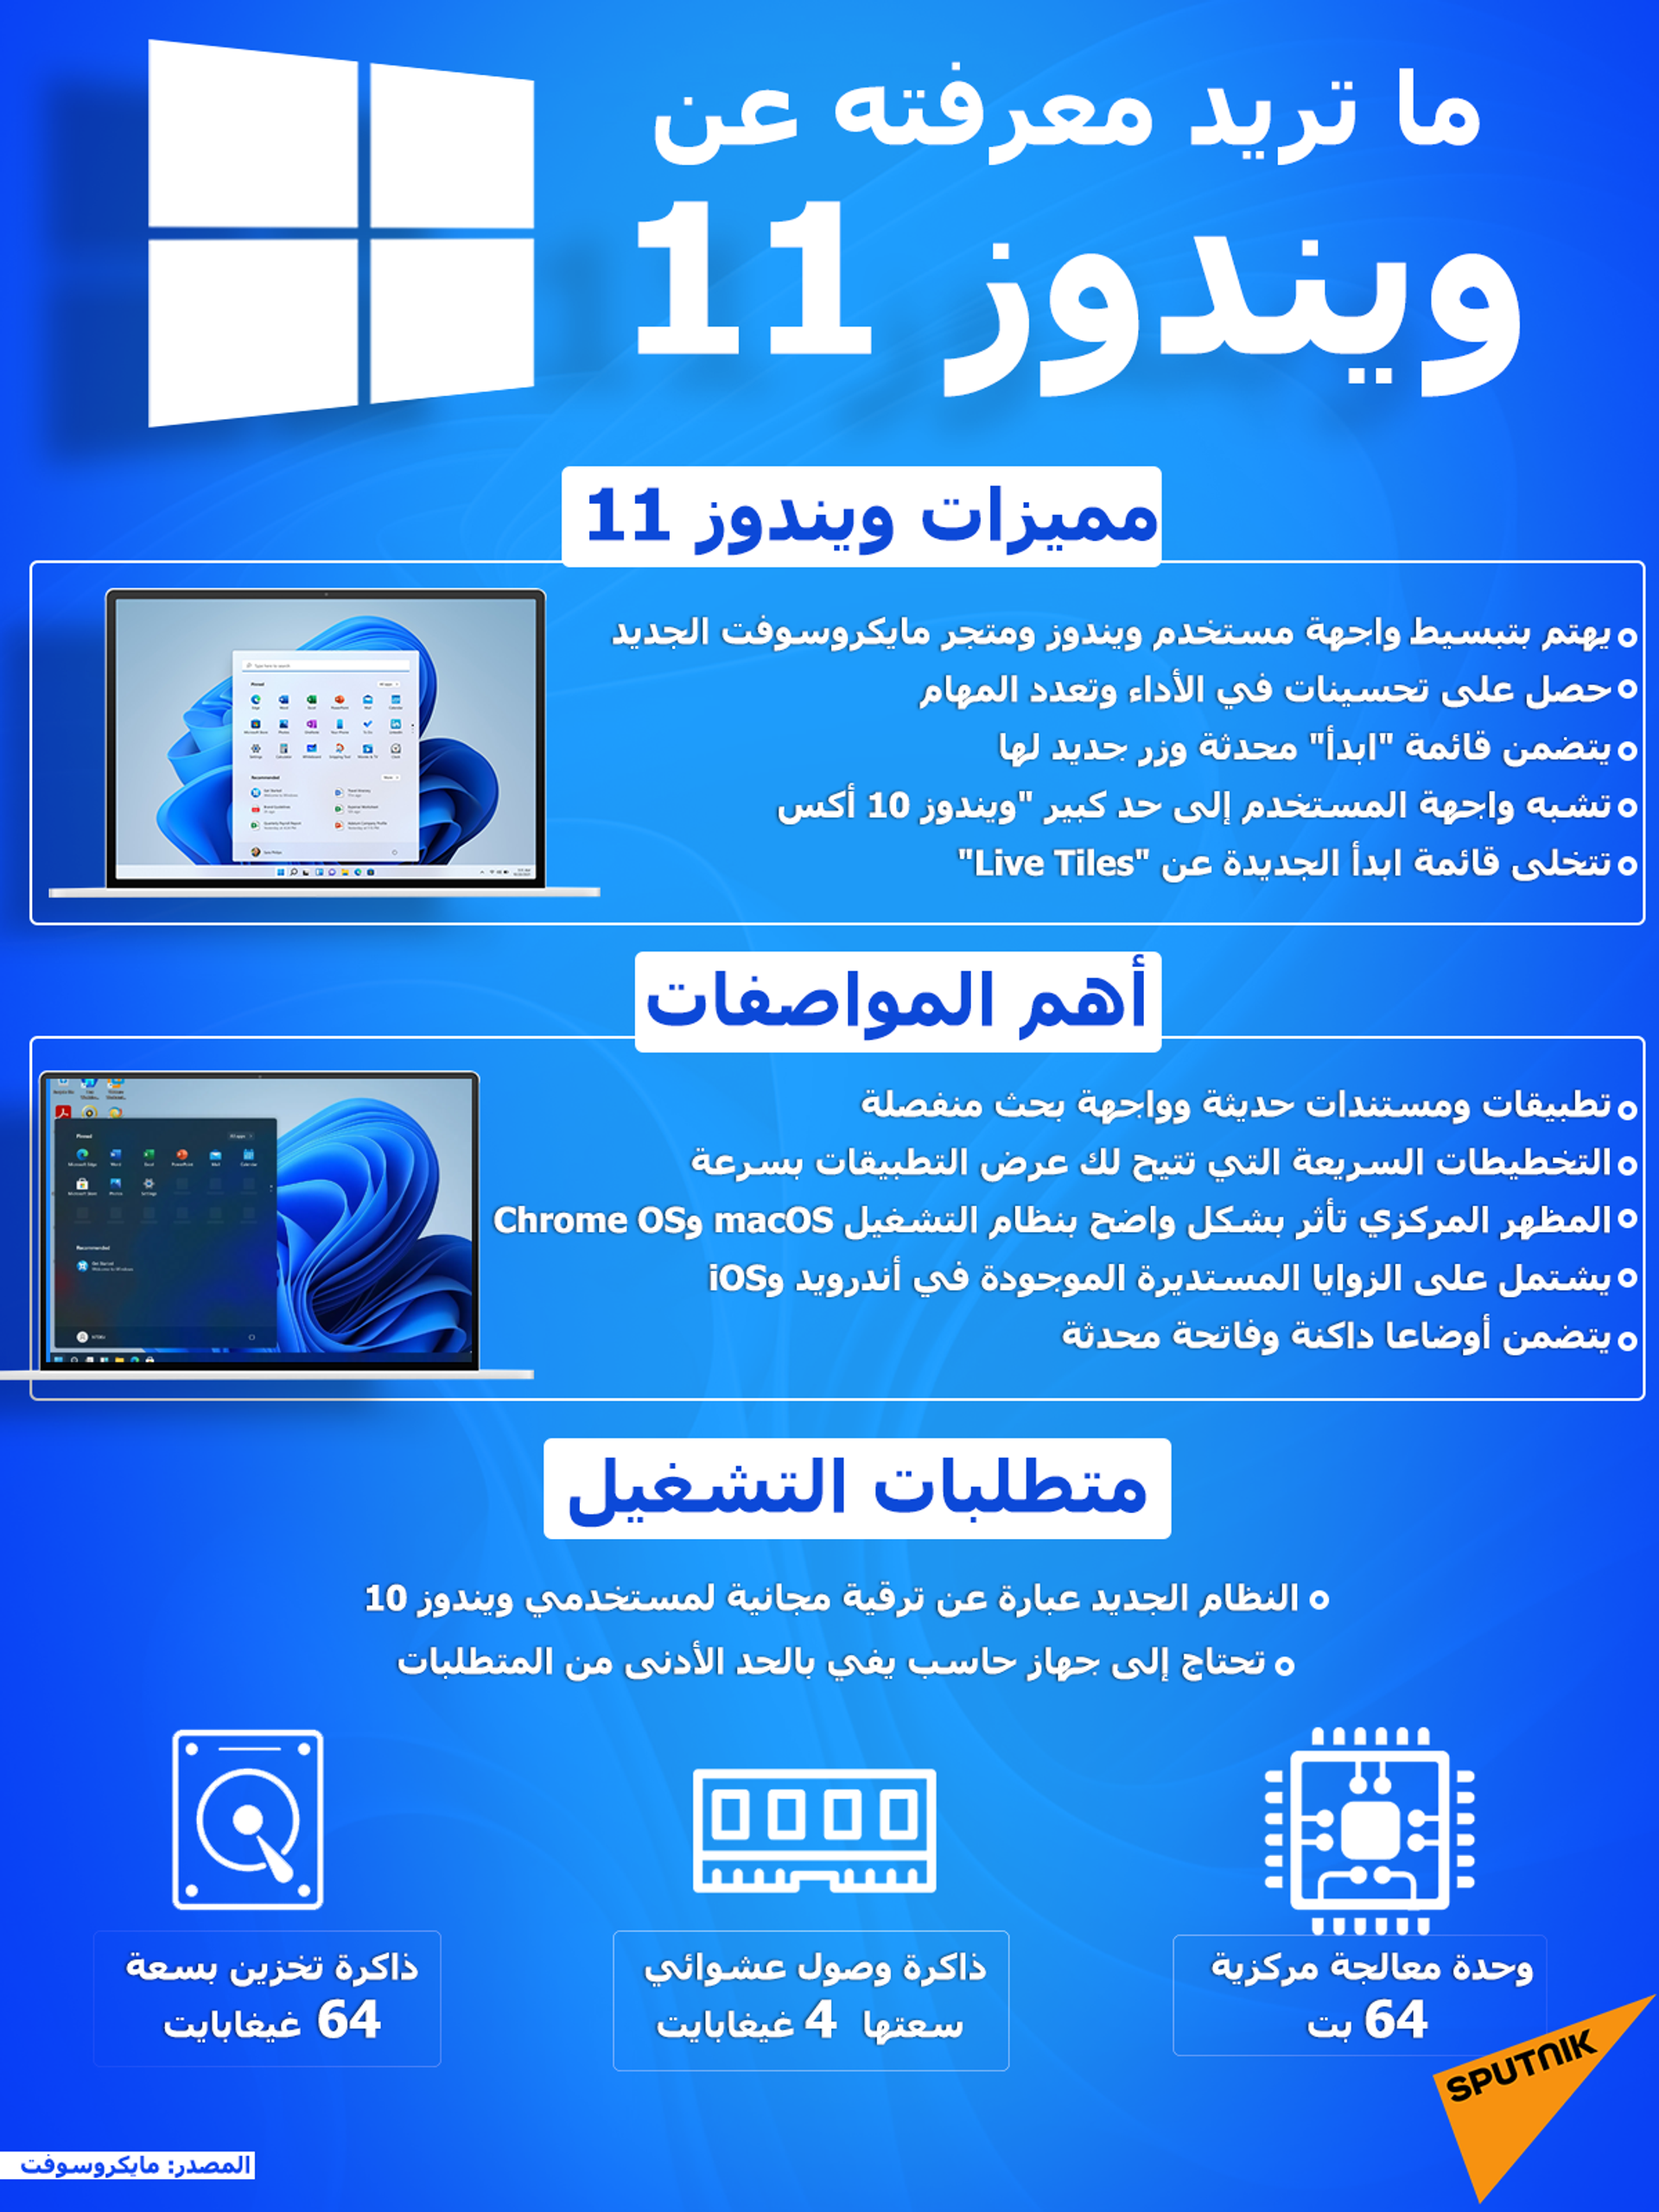 حذف ميزات هامة من برنامج ويندوز 11 الجديد - سبوتنيك عربي, 1920, 22.07.2021